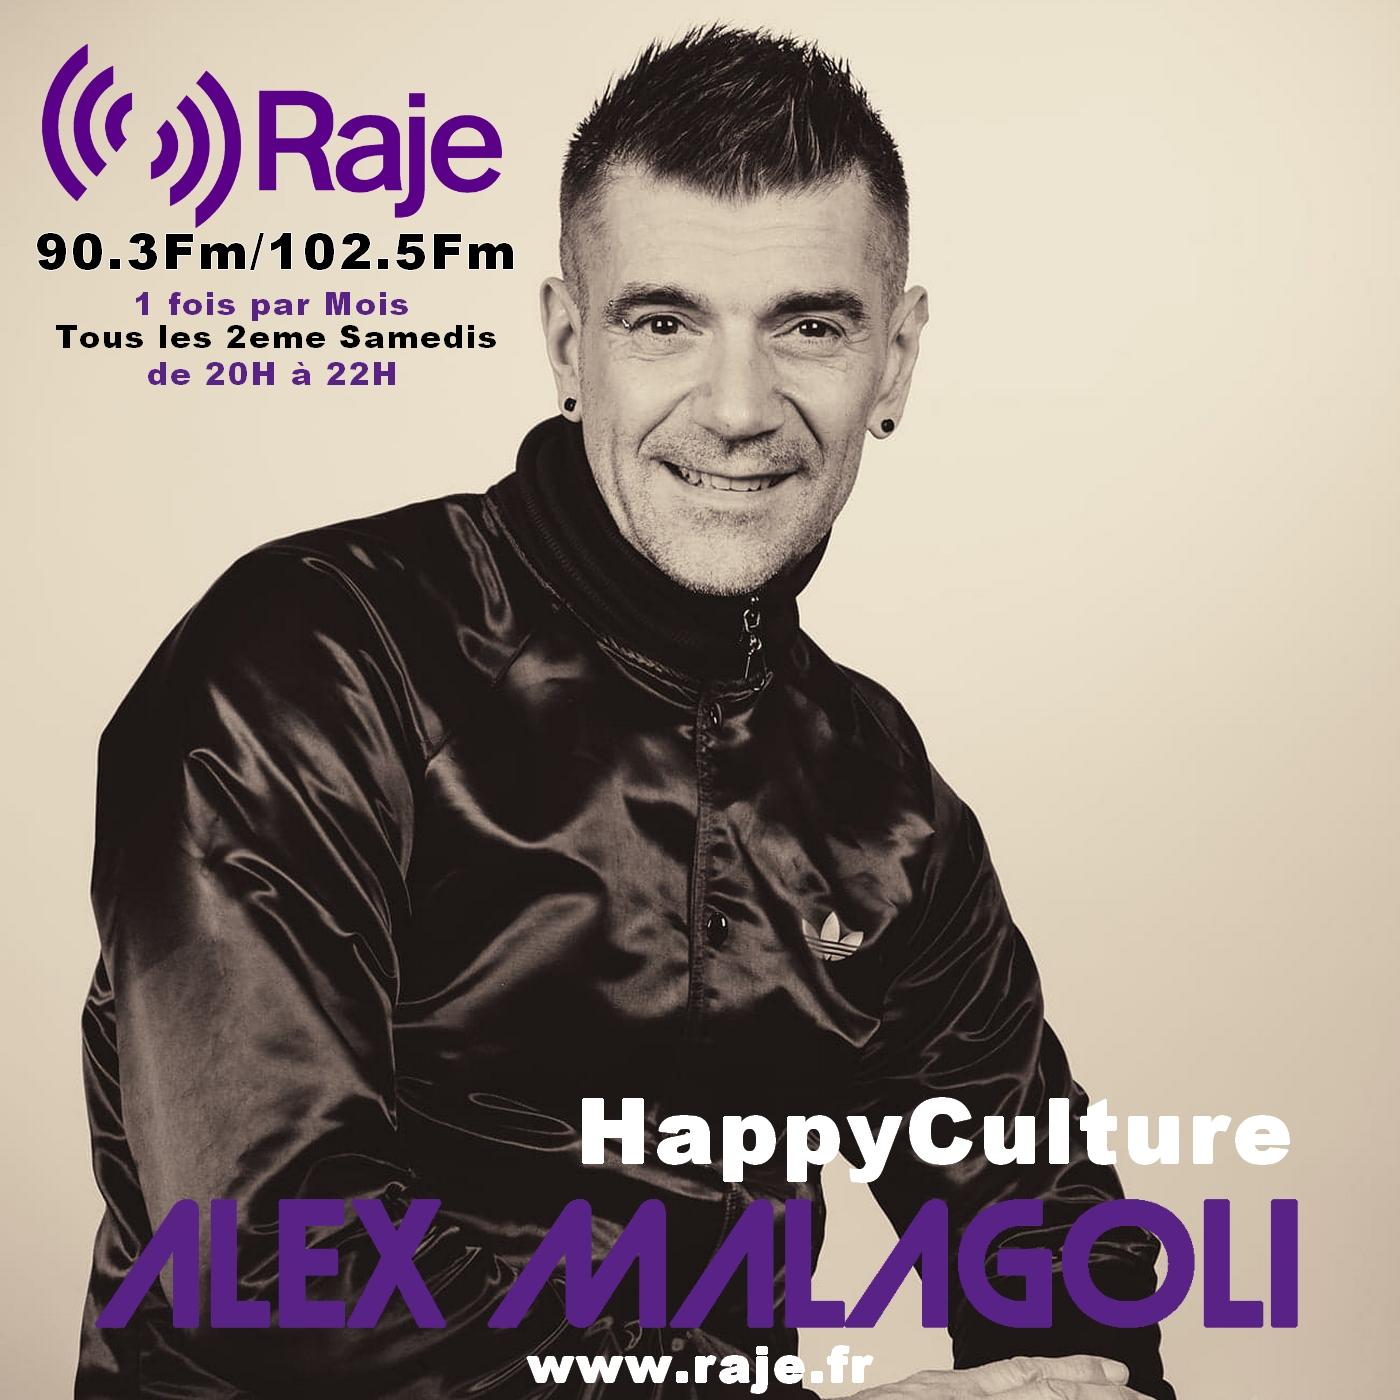 Happyculture : l'émission HOUSE d'Alex Malagoli #1 avec Seb Loger du Bokaos, des classiques de la house...